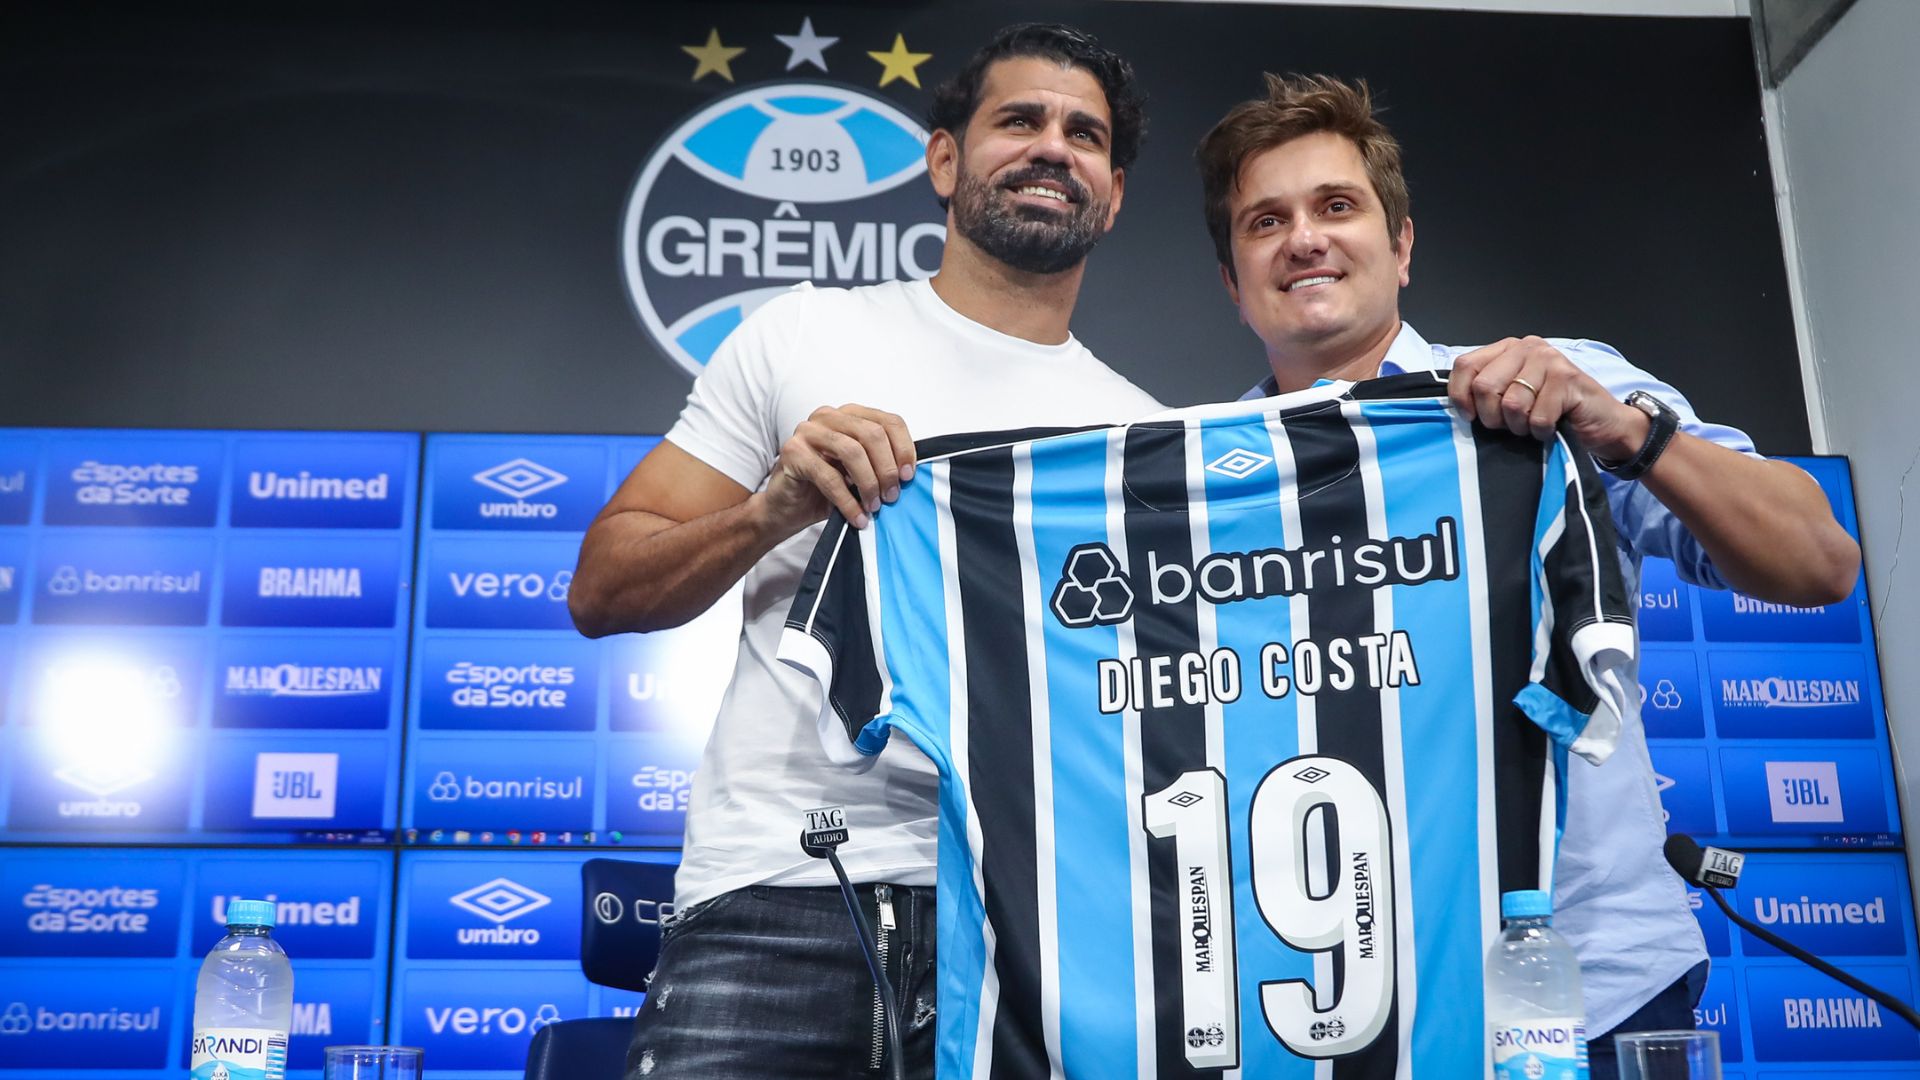 Diego Costa, o novo camisa 19 do Grêmio (Crédito: Lucas Uebel / Grêmio)